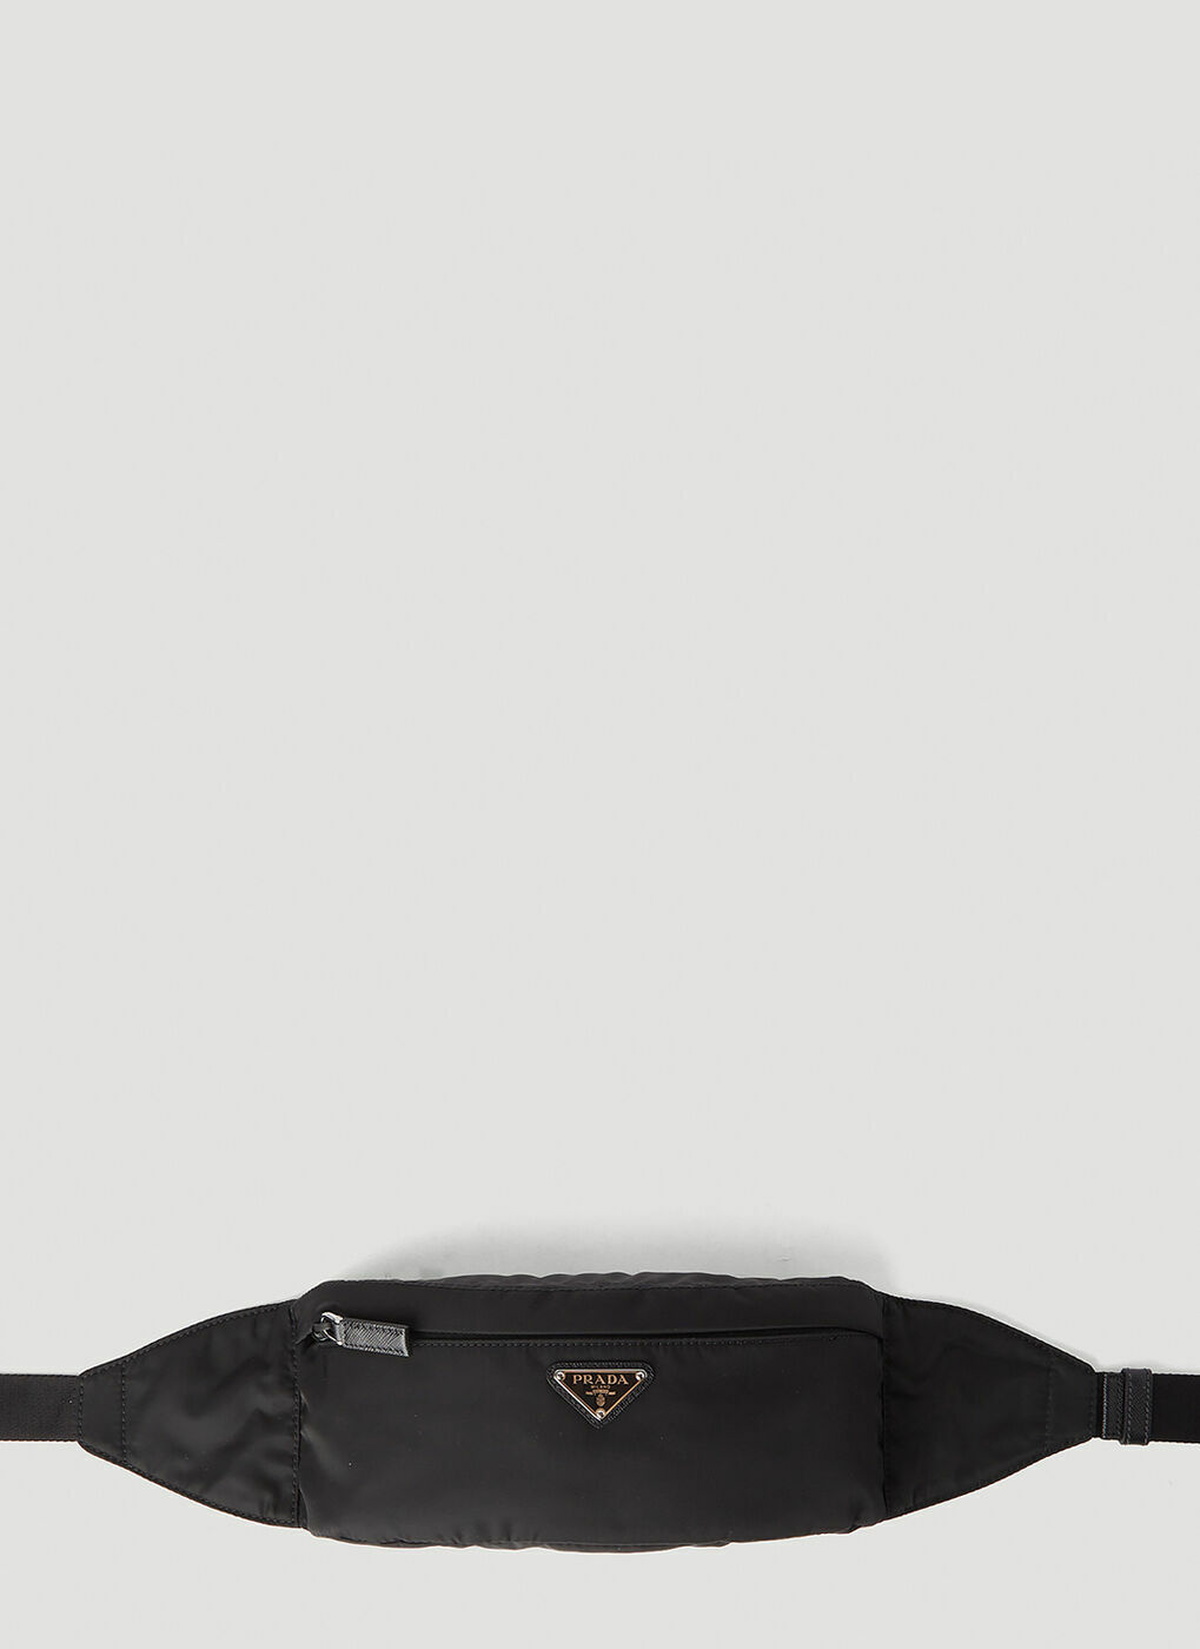 Prada Marsupio Re-nylon Belt Bag in Black for Men